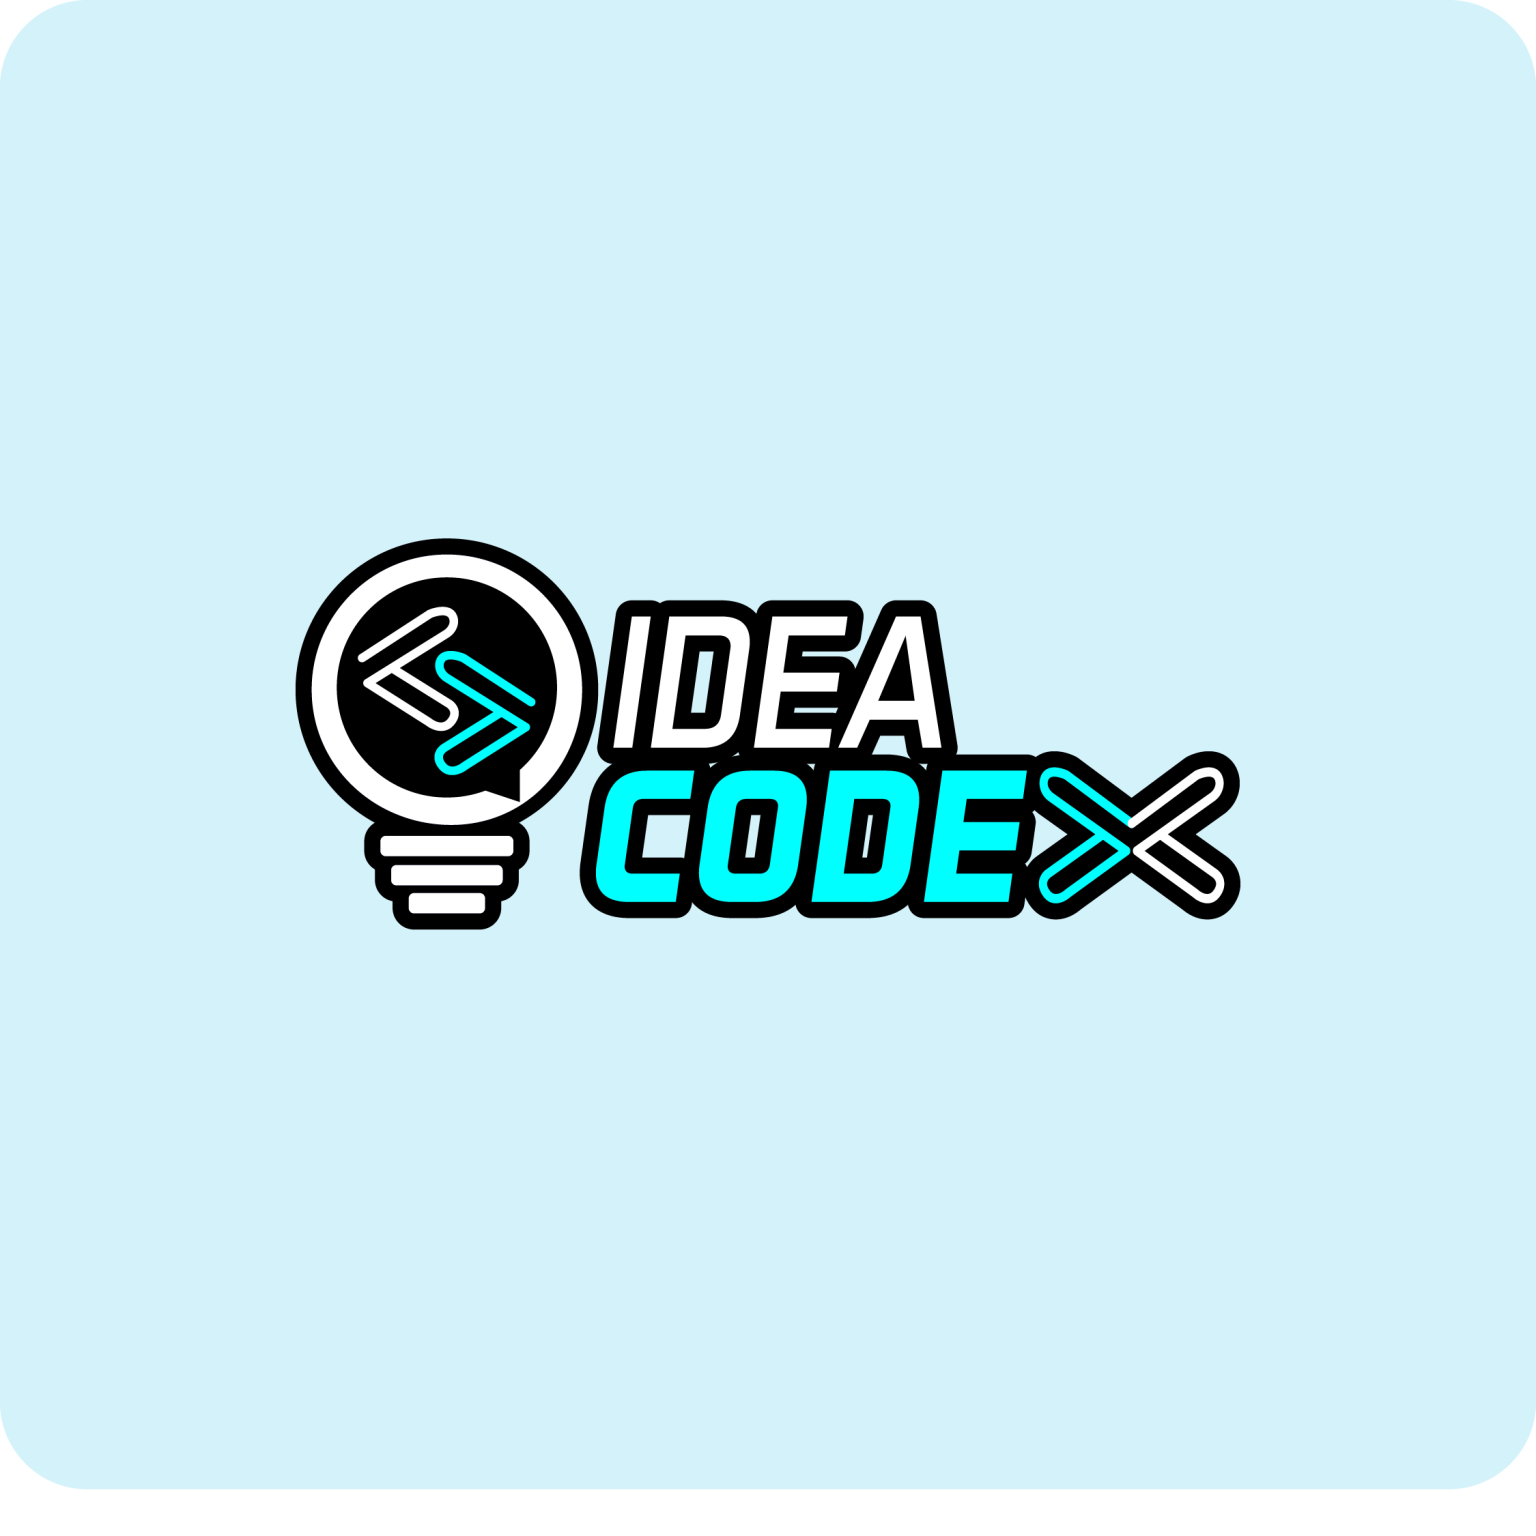 www.ideacode.co